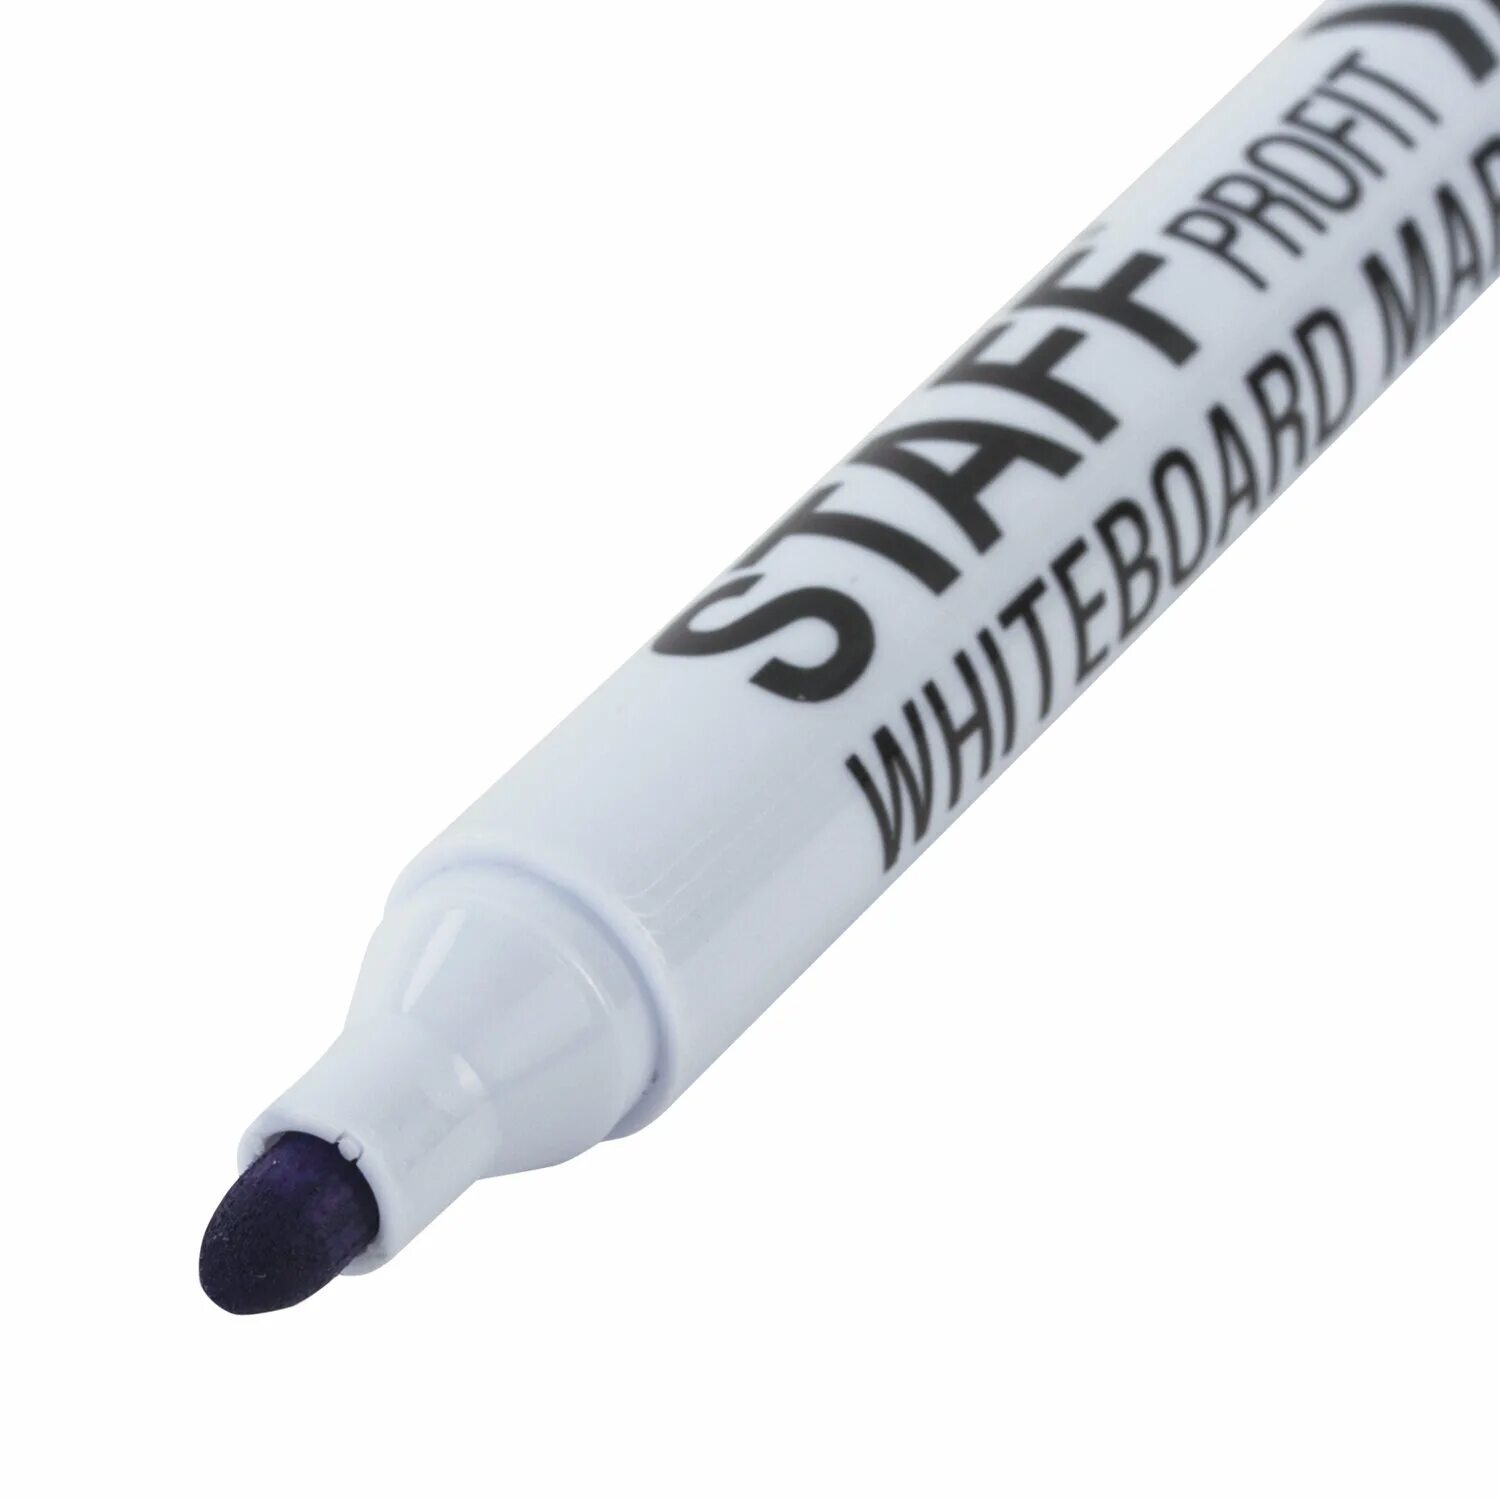 Staff маркер Basic, черный. Маркеры стираемые для белой доски набор 4цвета staff WBD-644 2.5мм. Белый маркер. Маркеры для доски стирающиеся стафф. Маркеры стираемые для белой доски